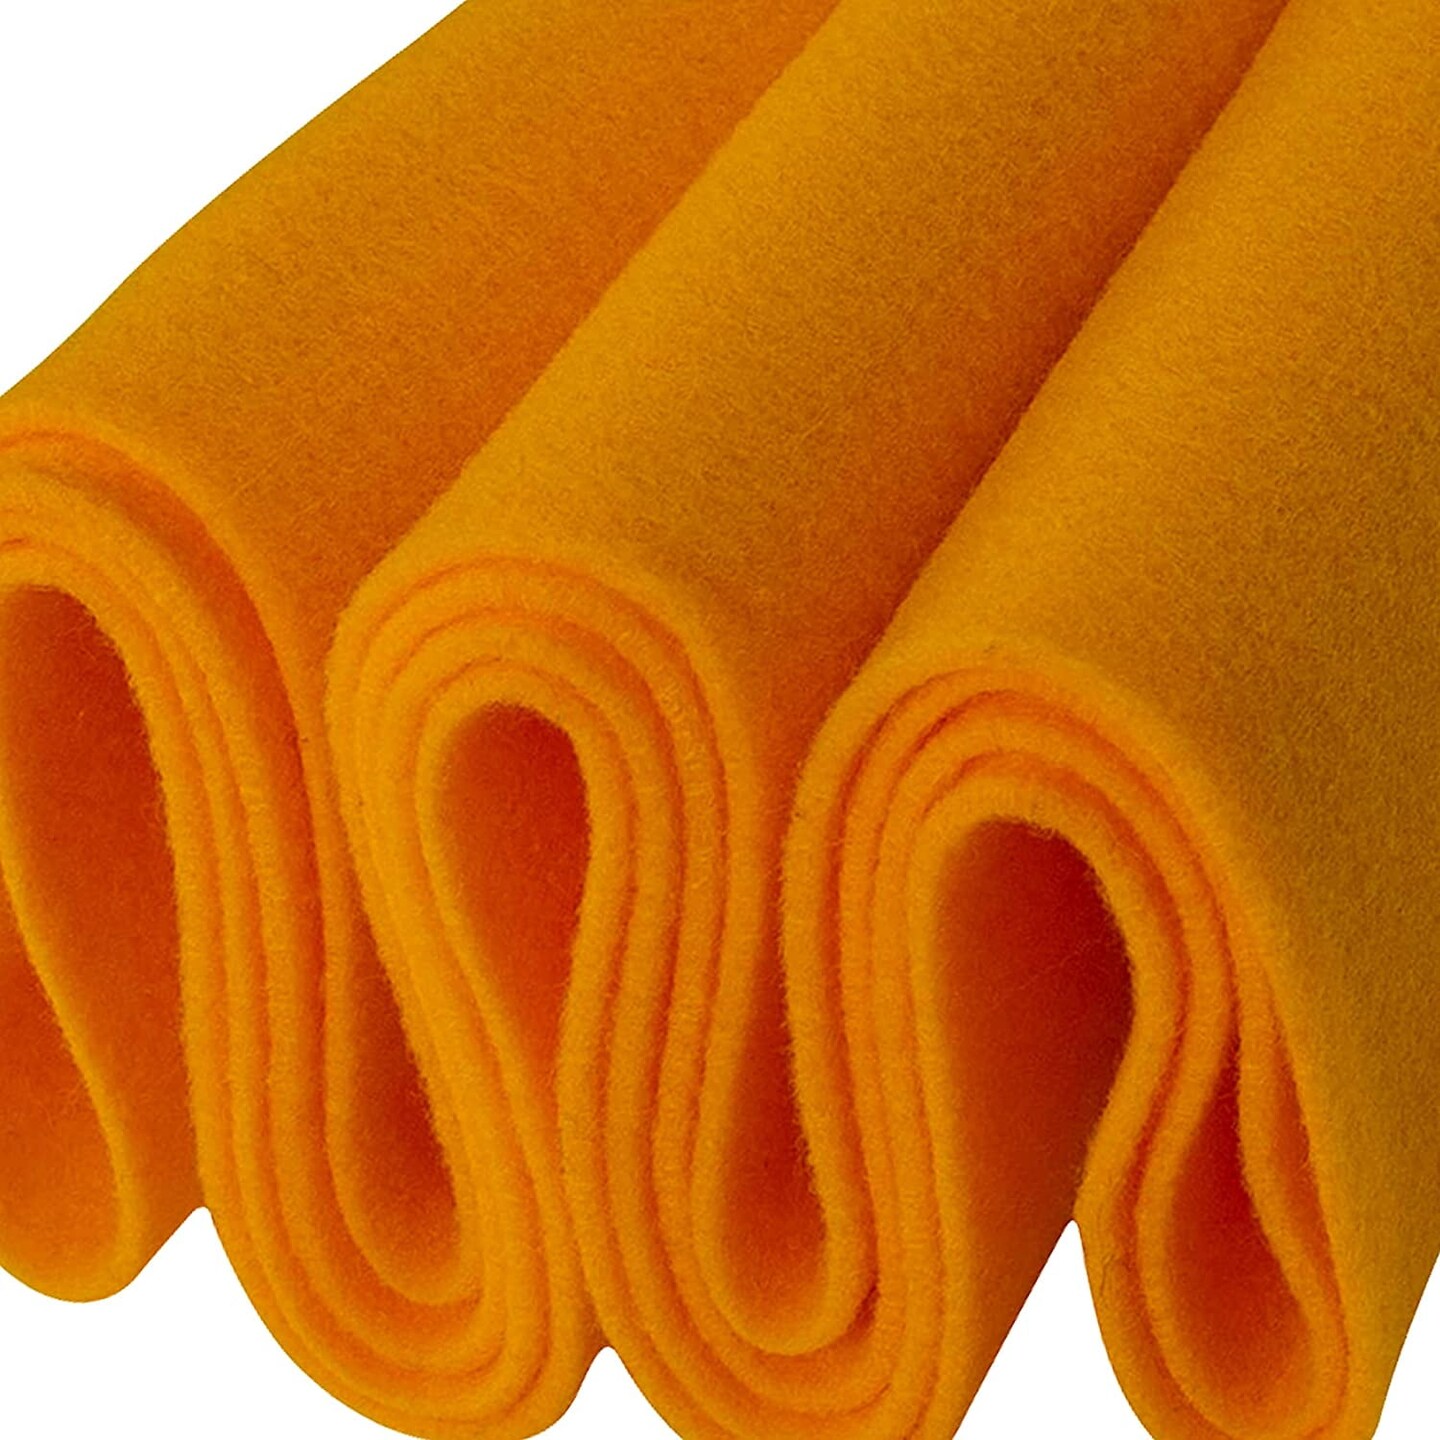 Acrylic Felt Fabric Yellow 5 Yards- 72 Wide by 180 Long Craft Felt